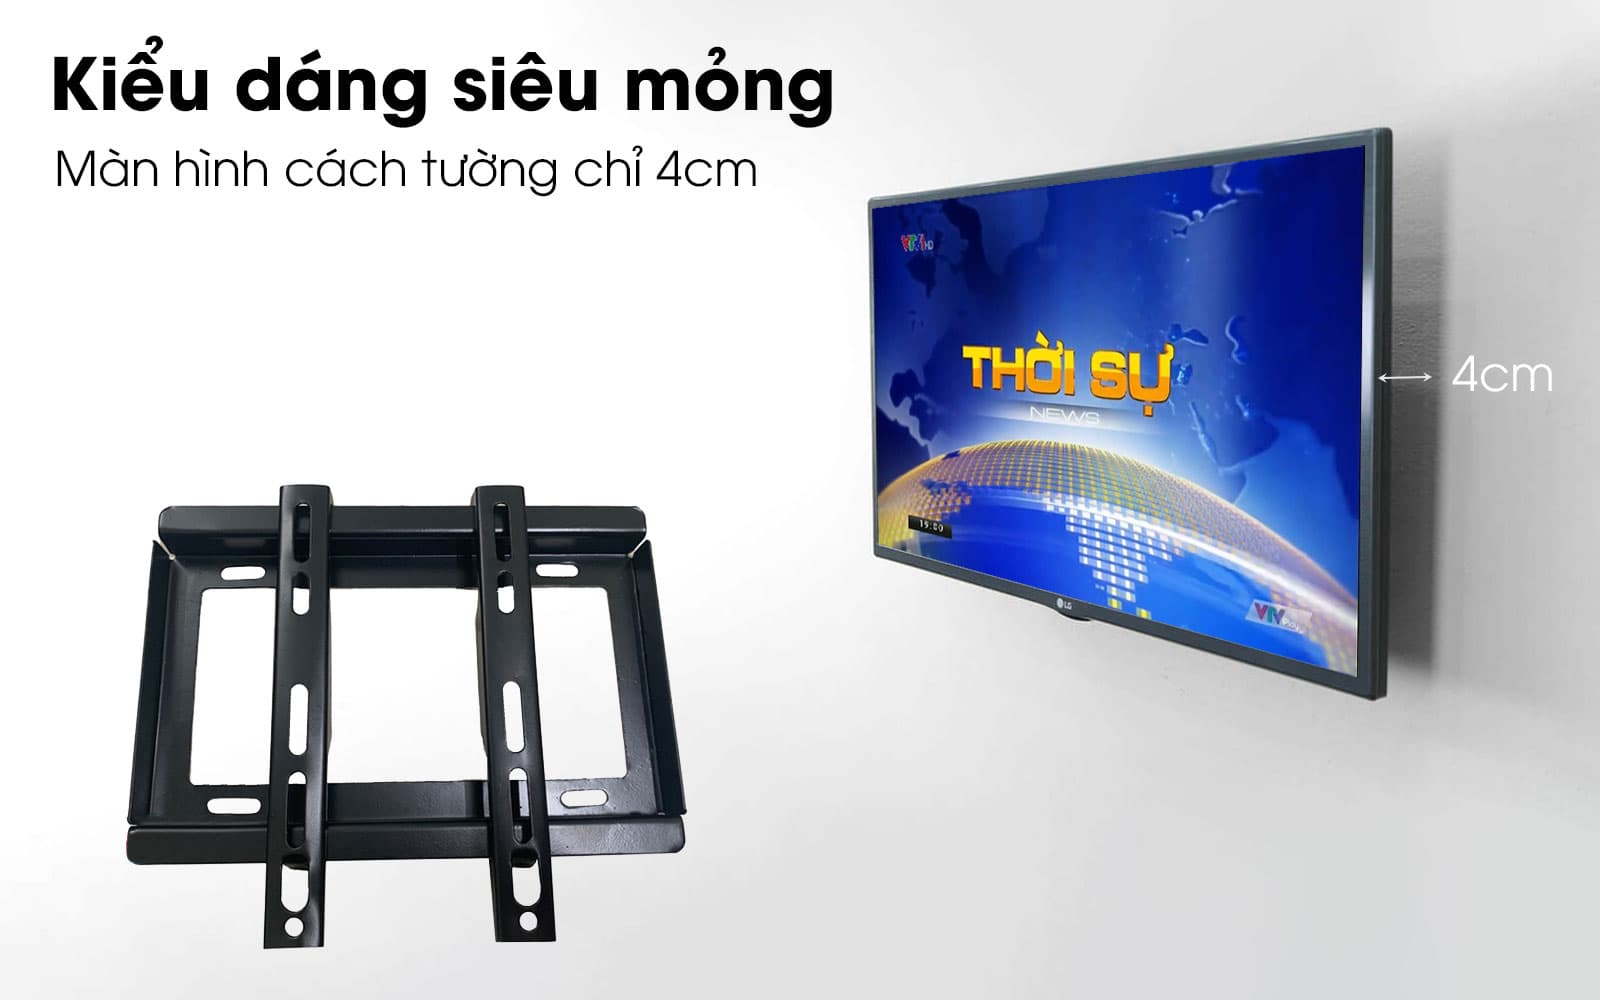 gia-treo-tivi-phang-tuong-32-inch-cach-tuong